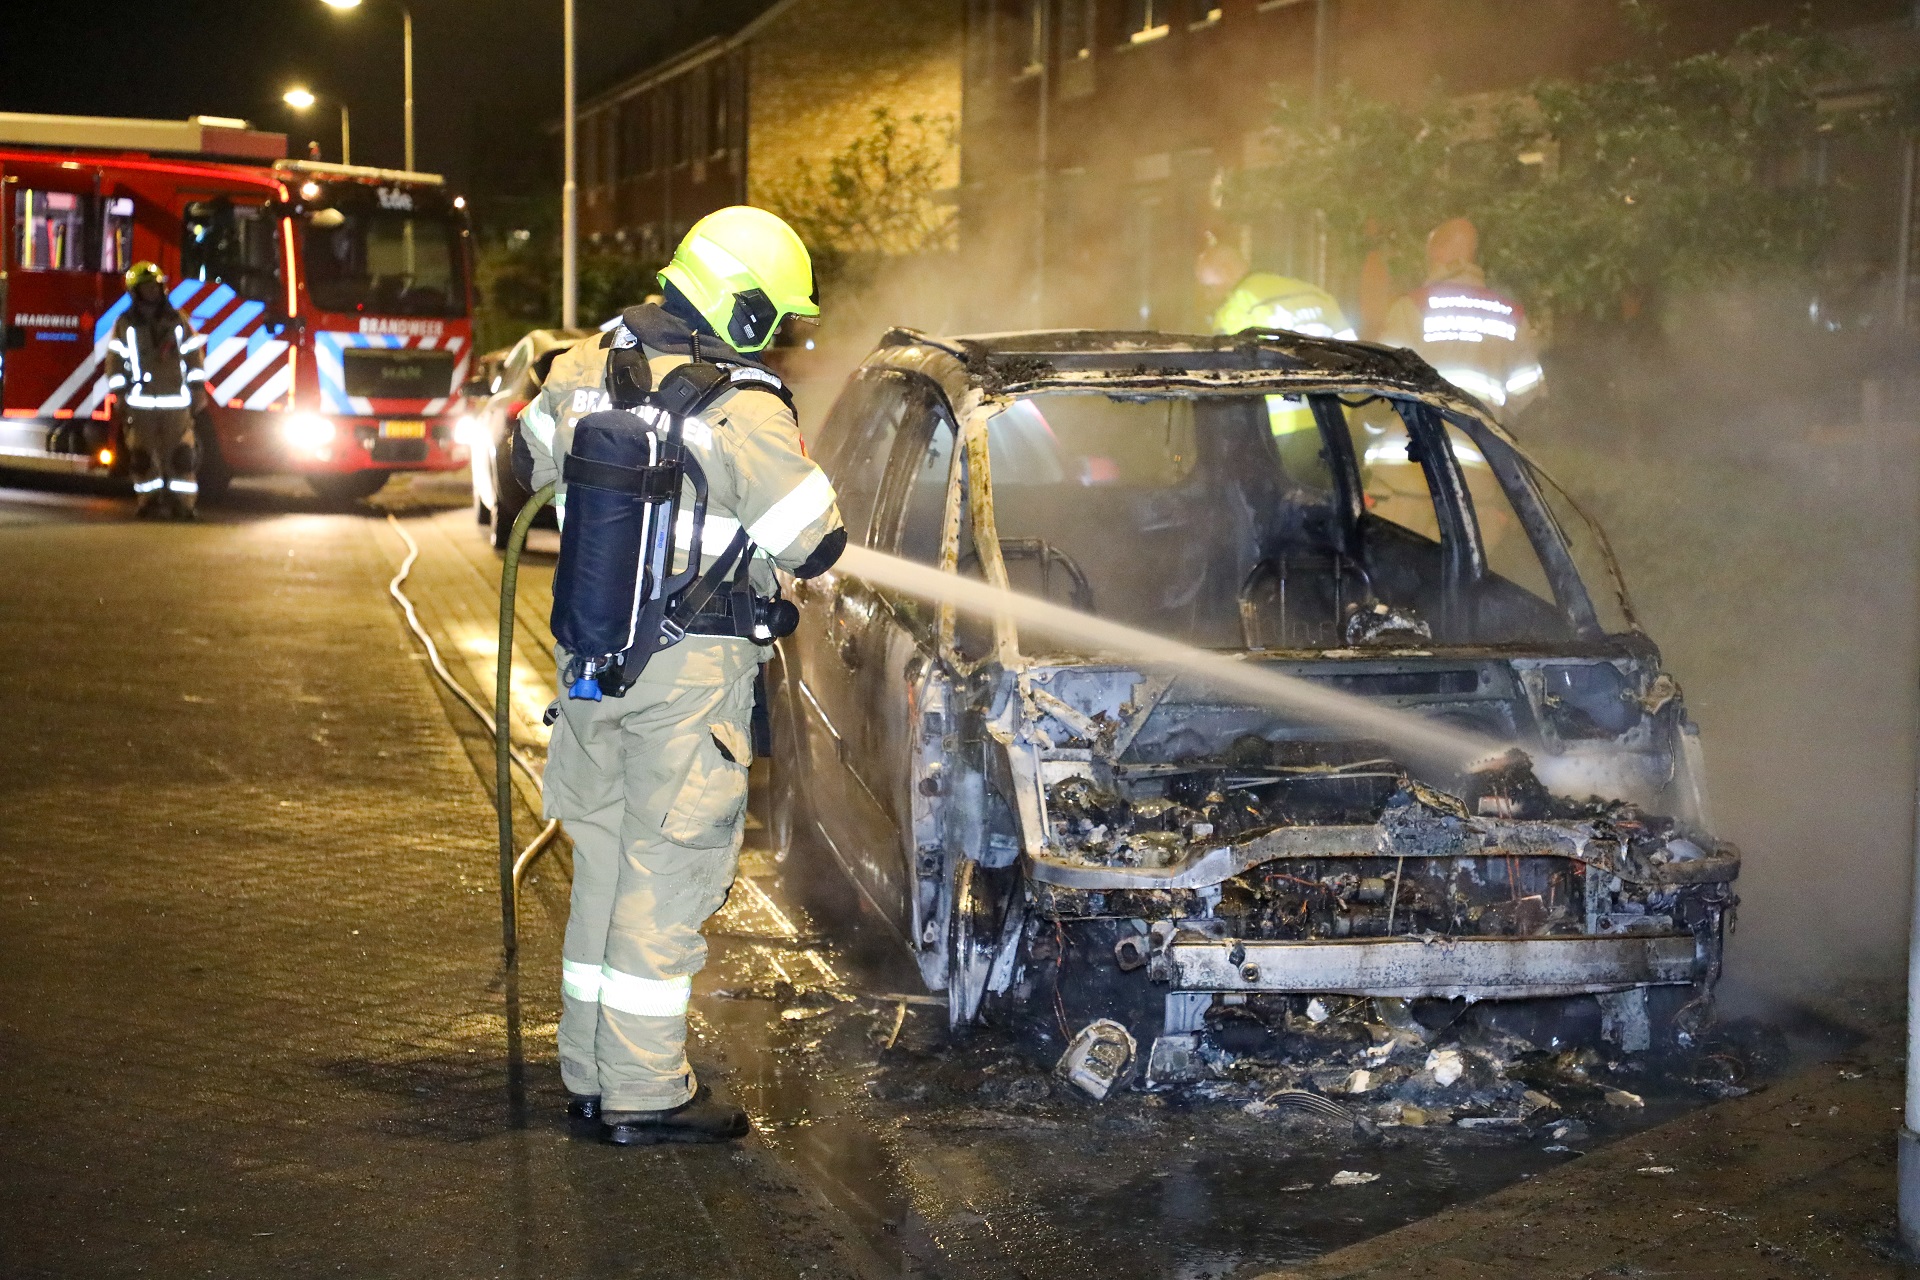 Politie doet onderzoek naar autobrand, mogelijke bewust aangestoken